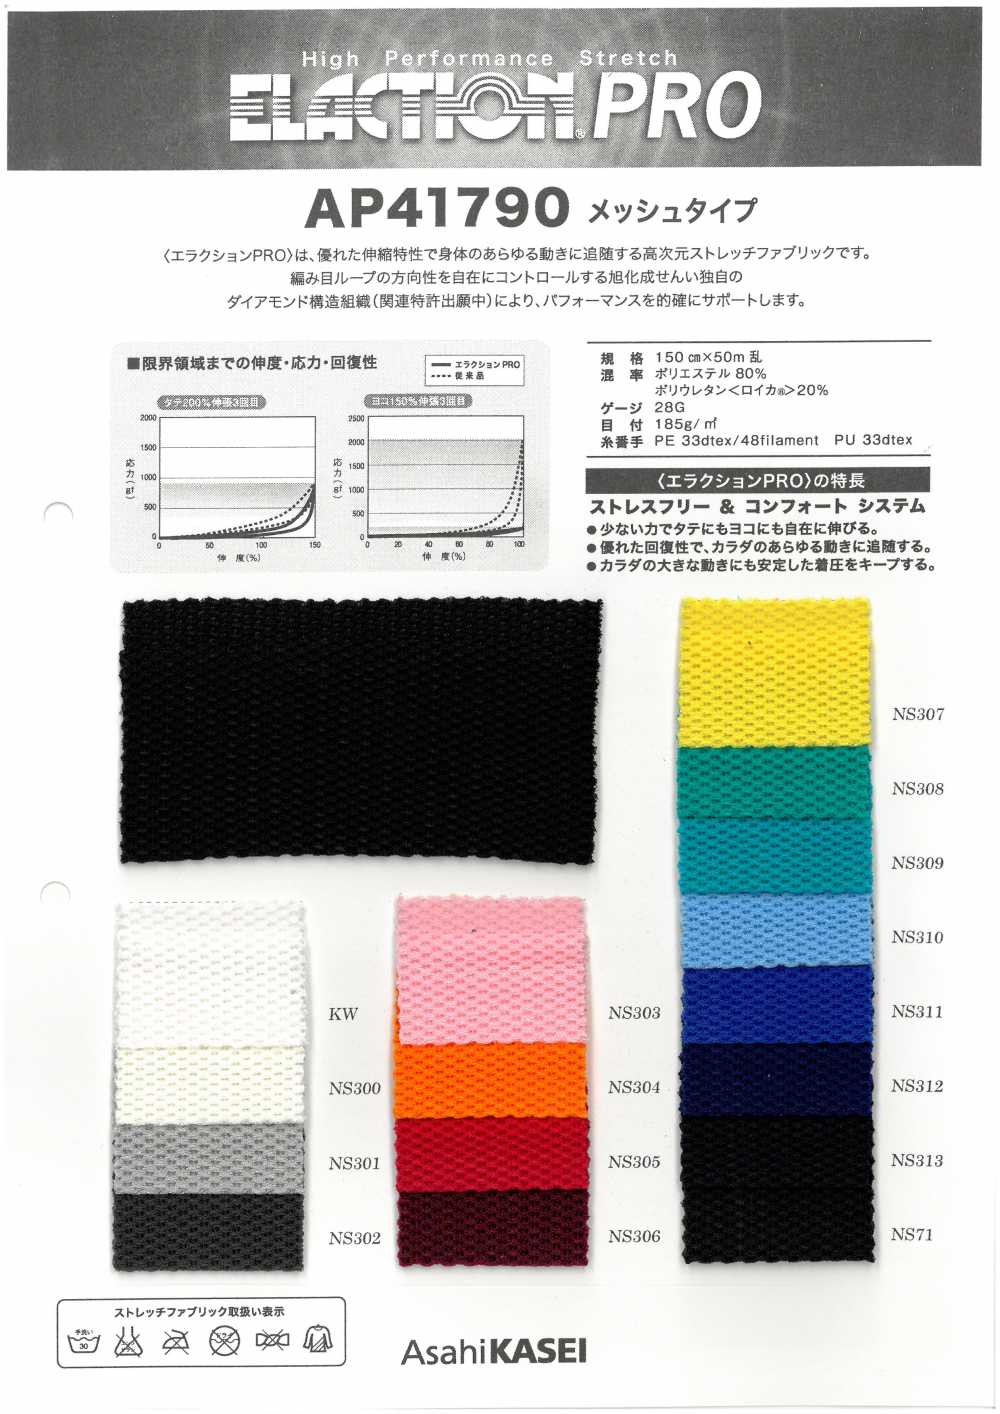 AP41790 Vải Co Giãn Loại Vải Lưới Japan Stretch